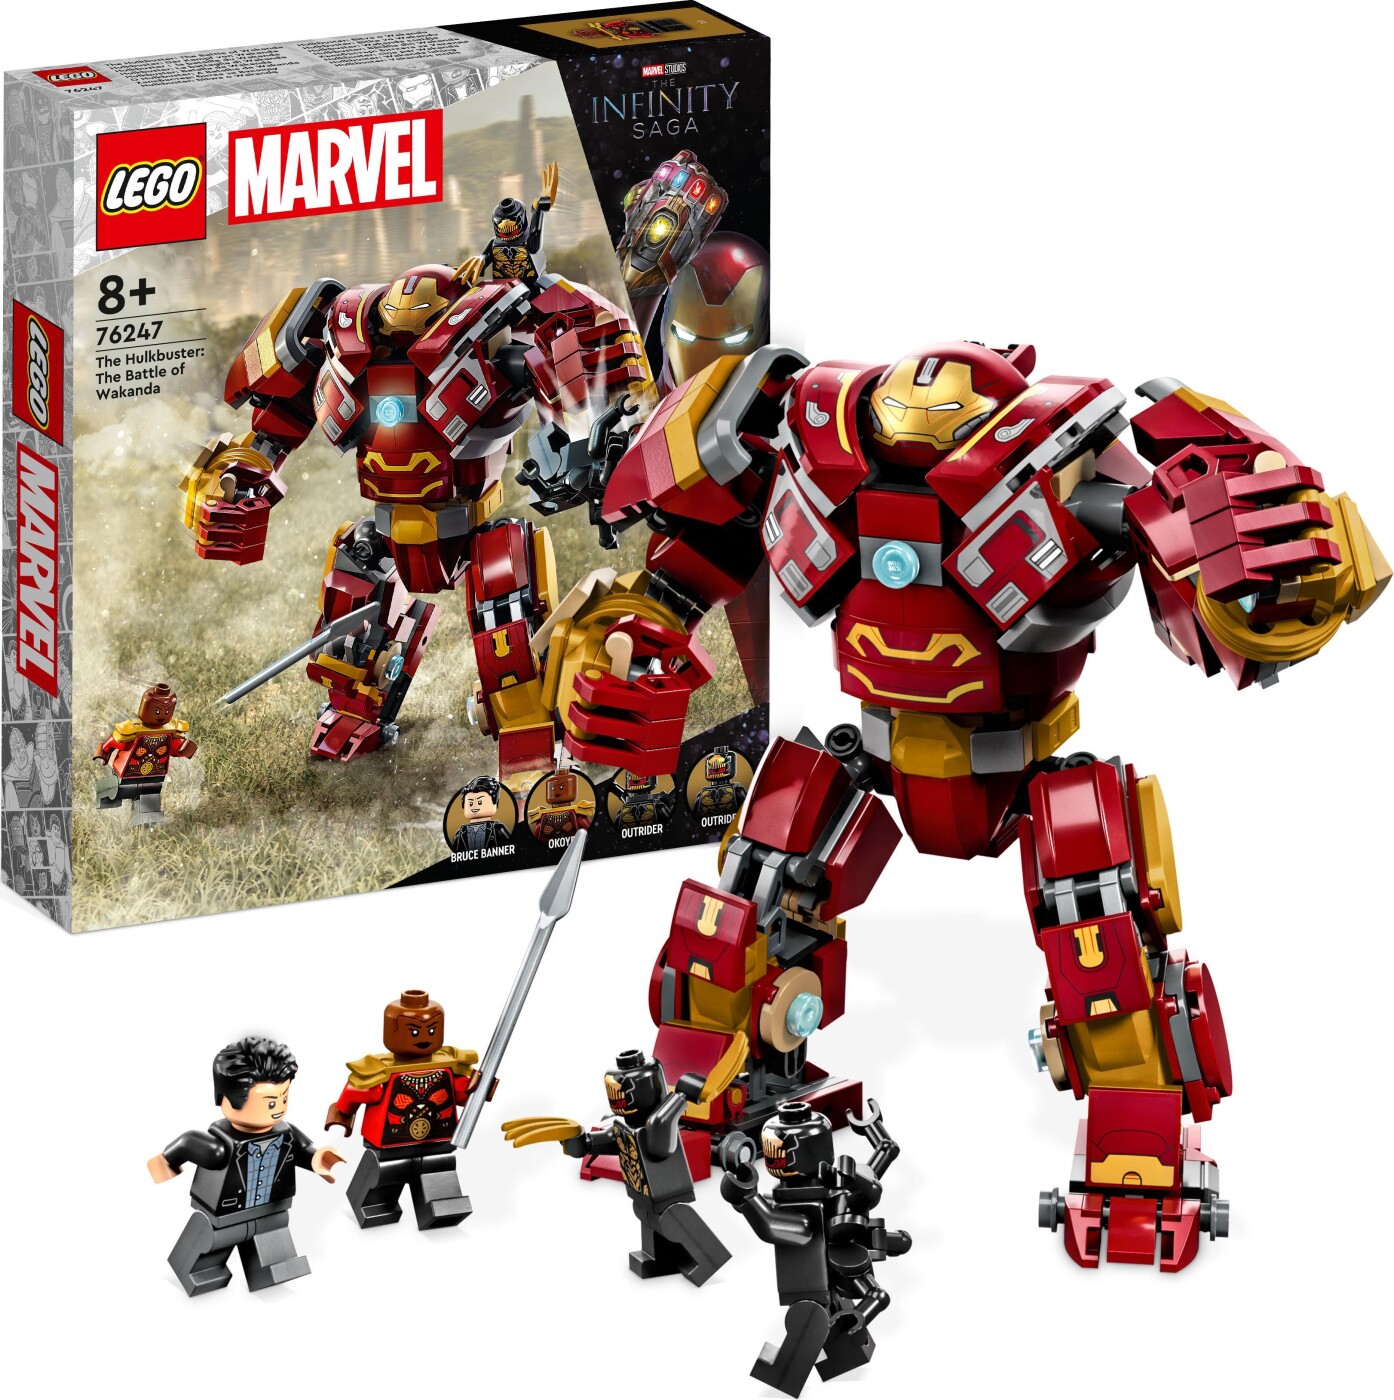 Billede af Lego Marvel - Hulkbuster - Slaget Om Wakanda - 76247 hos Gucca.dk